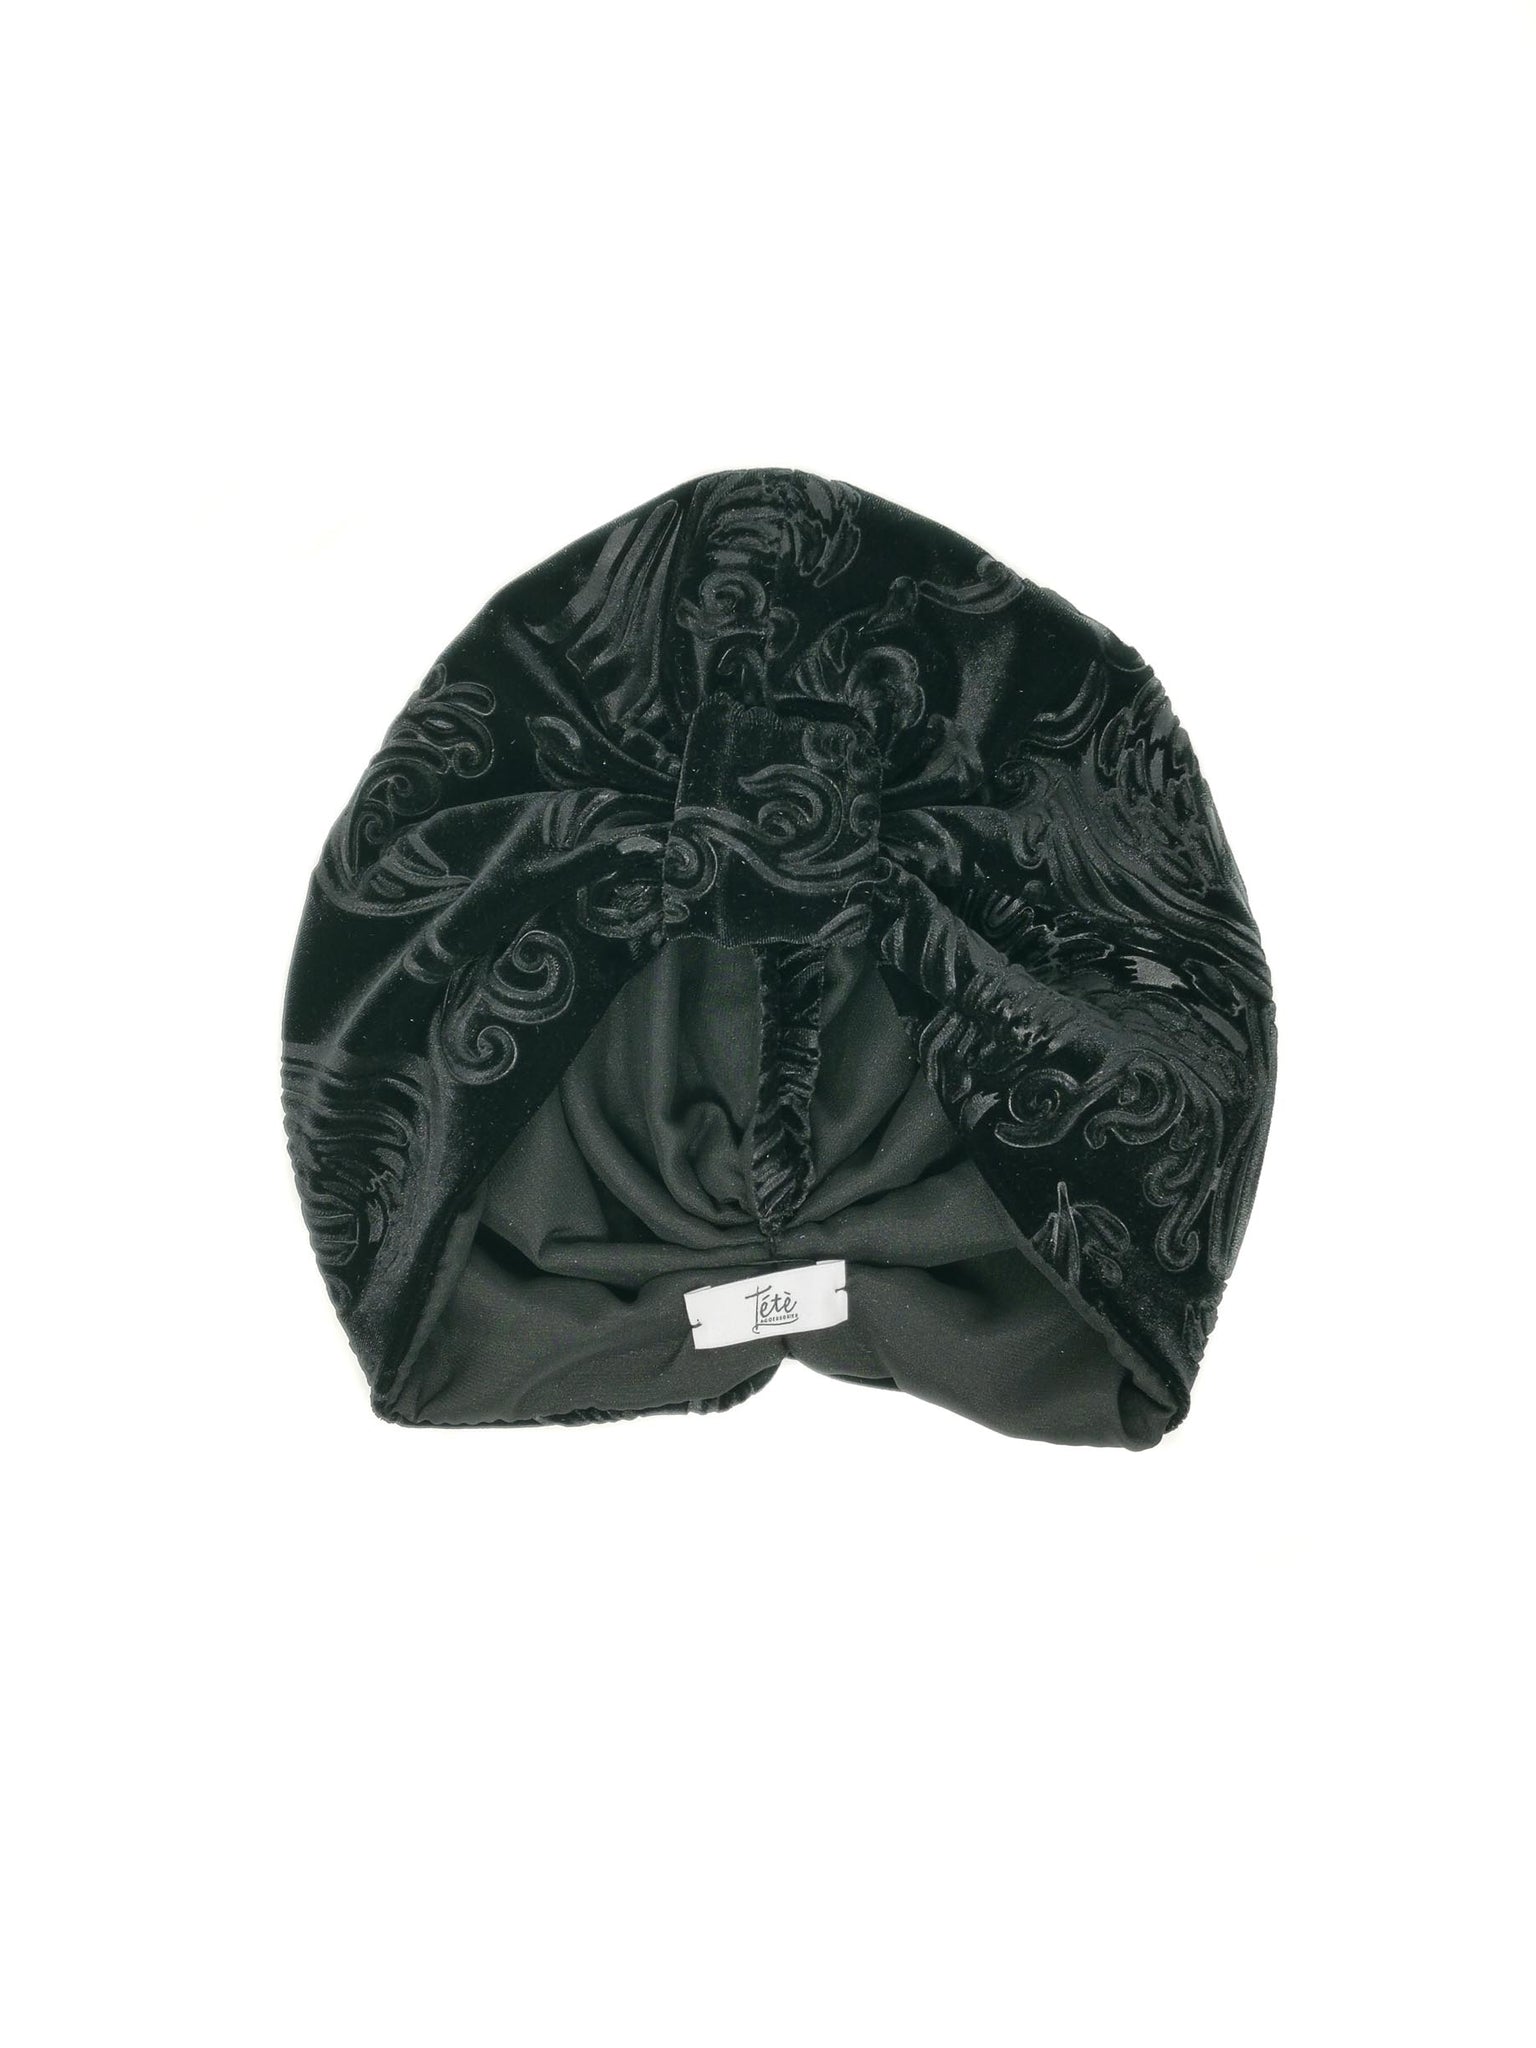 Black velvet devoré "Rose" turban